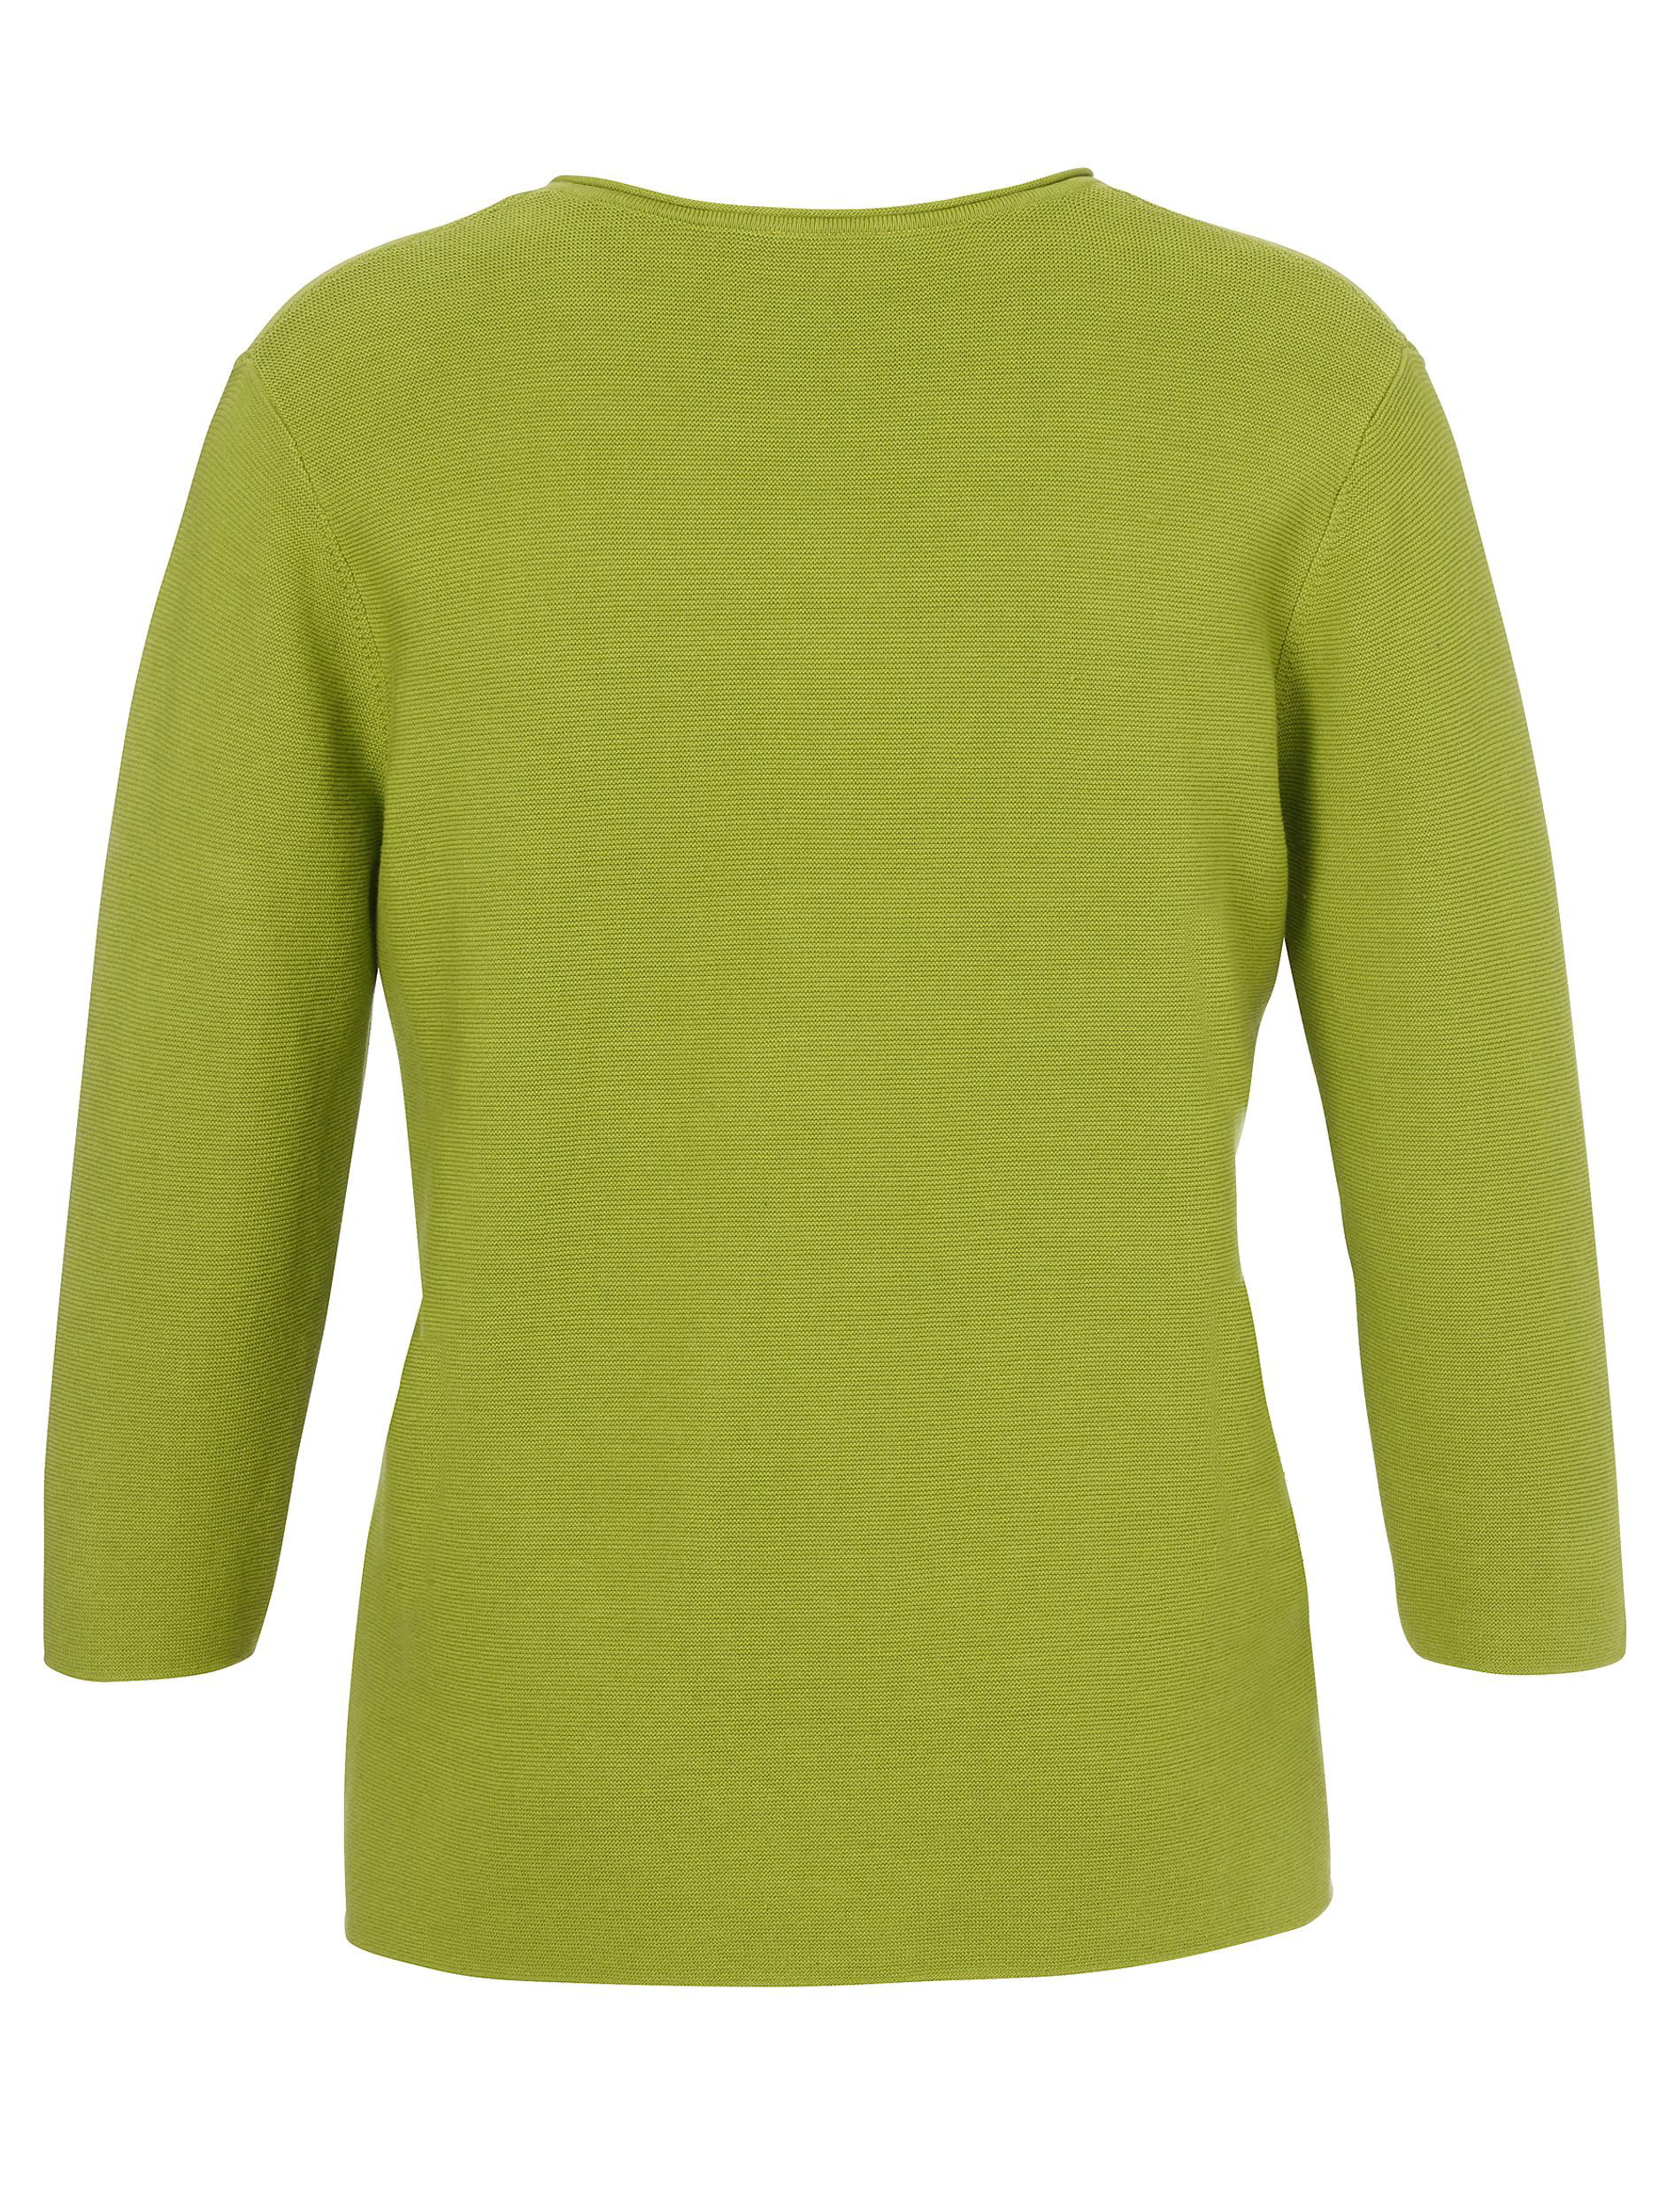  |  Pullover V-Ausschnitt 3/4 Arm | 50 | grün